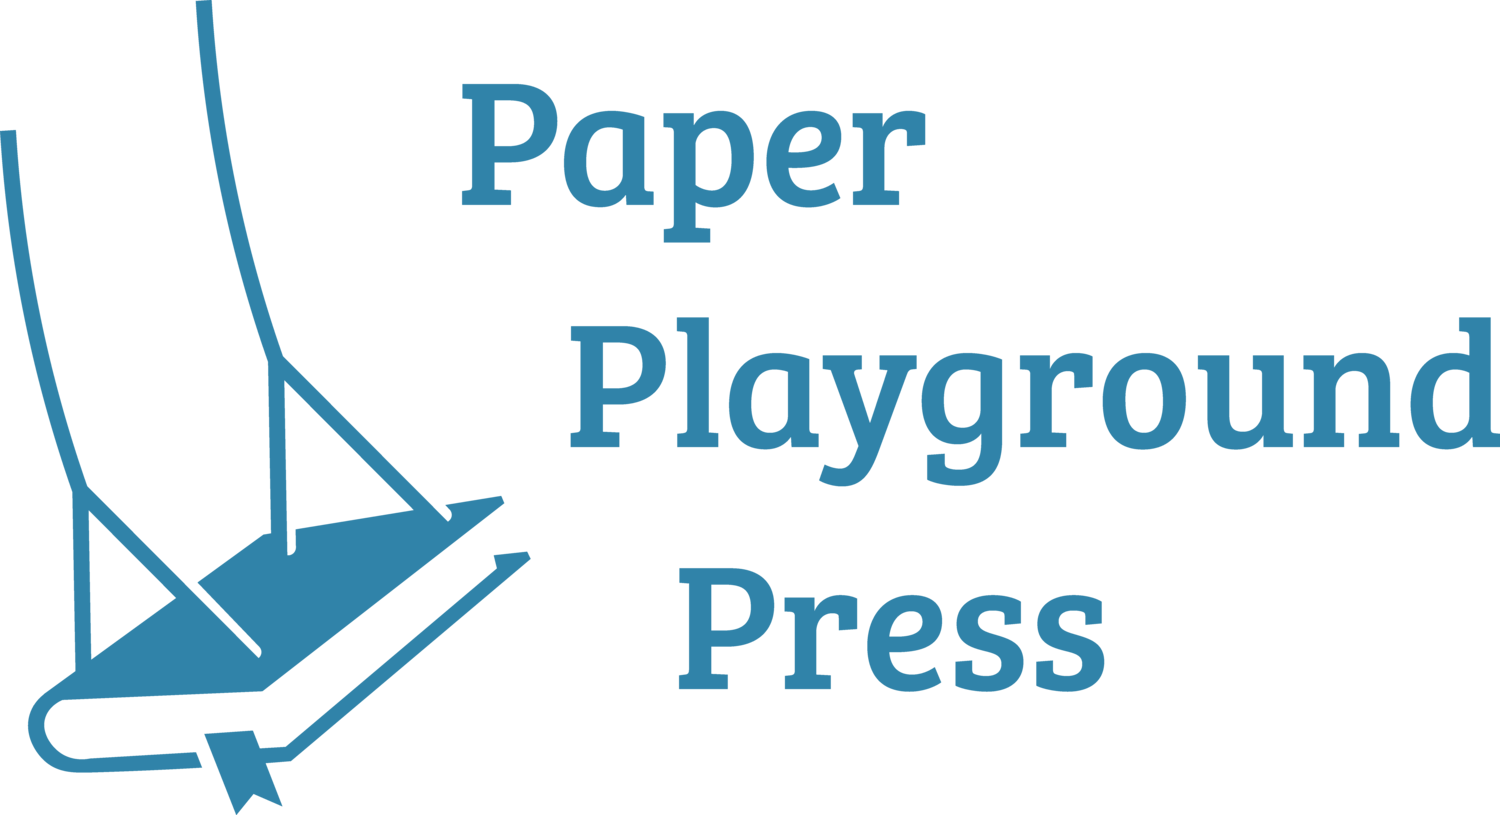 Paper Playground Press